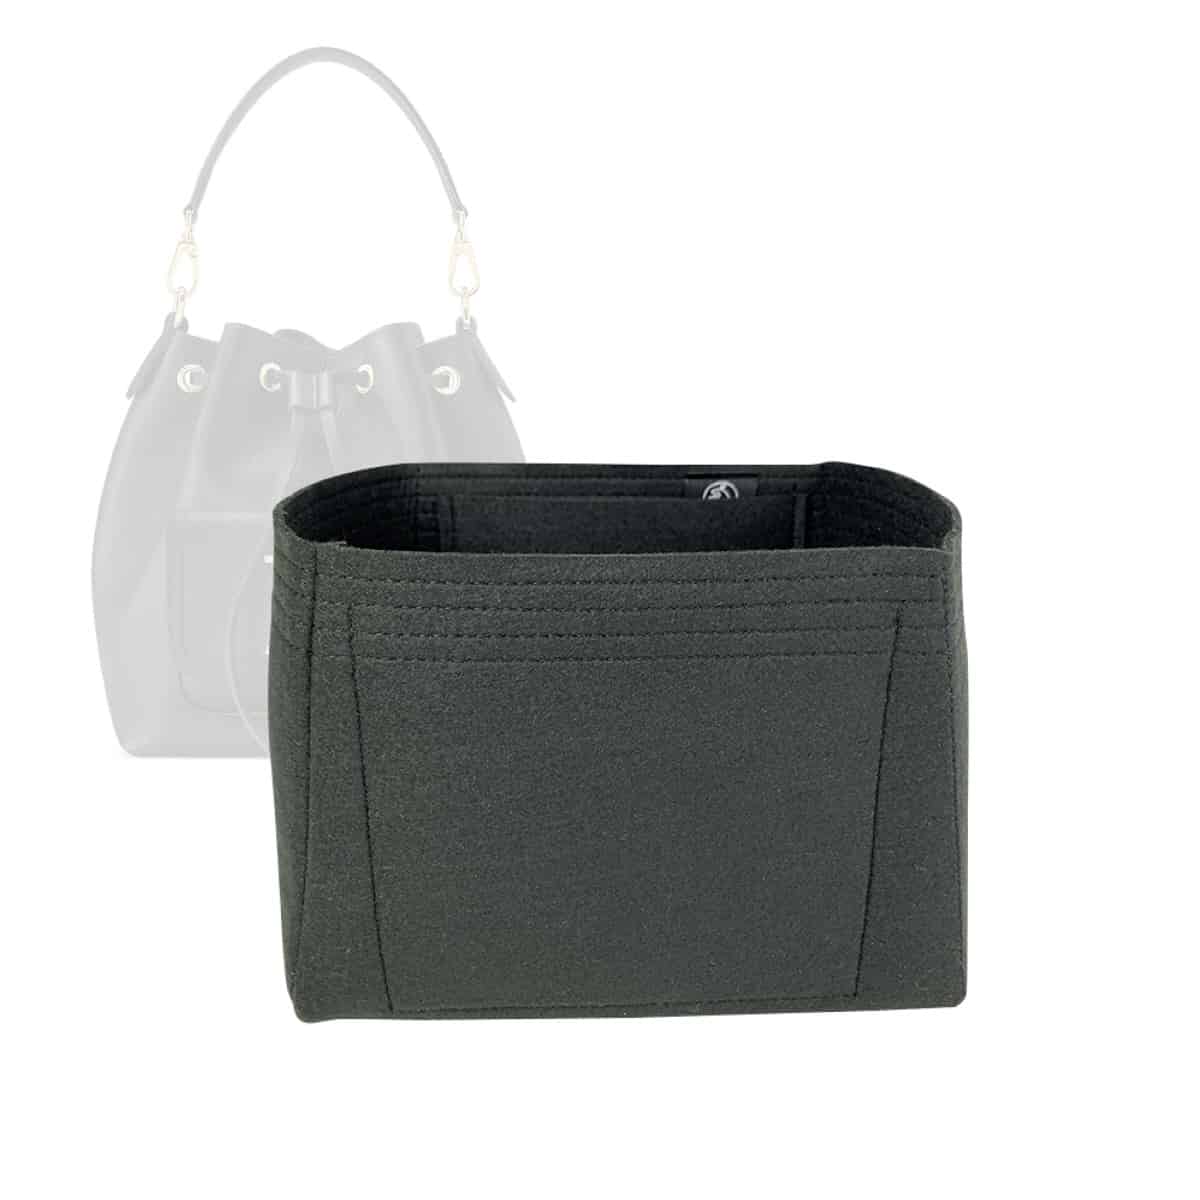  Zoomoni Premium Bag Organizer for Celine Medium Bucket